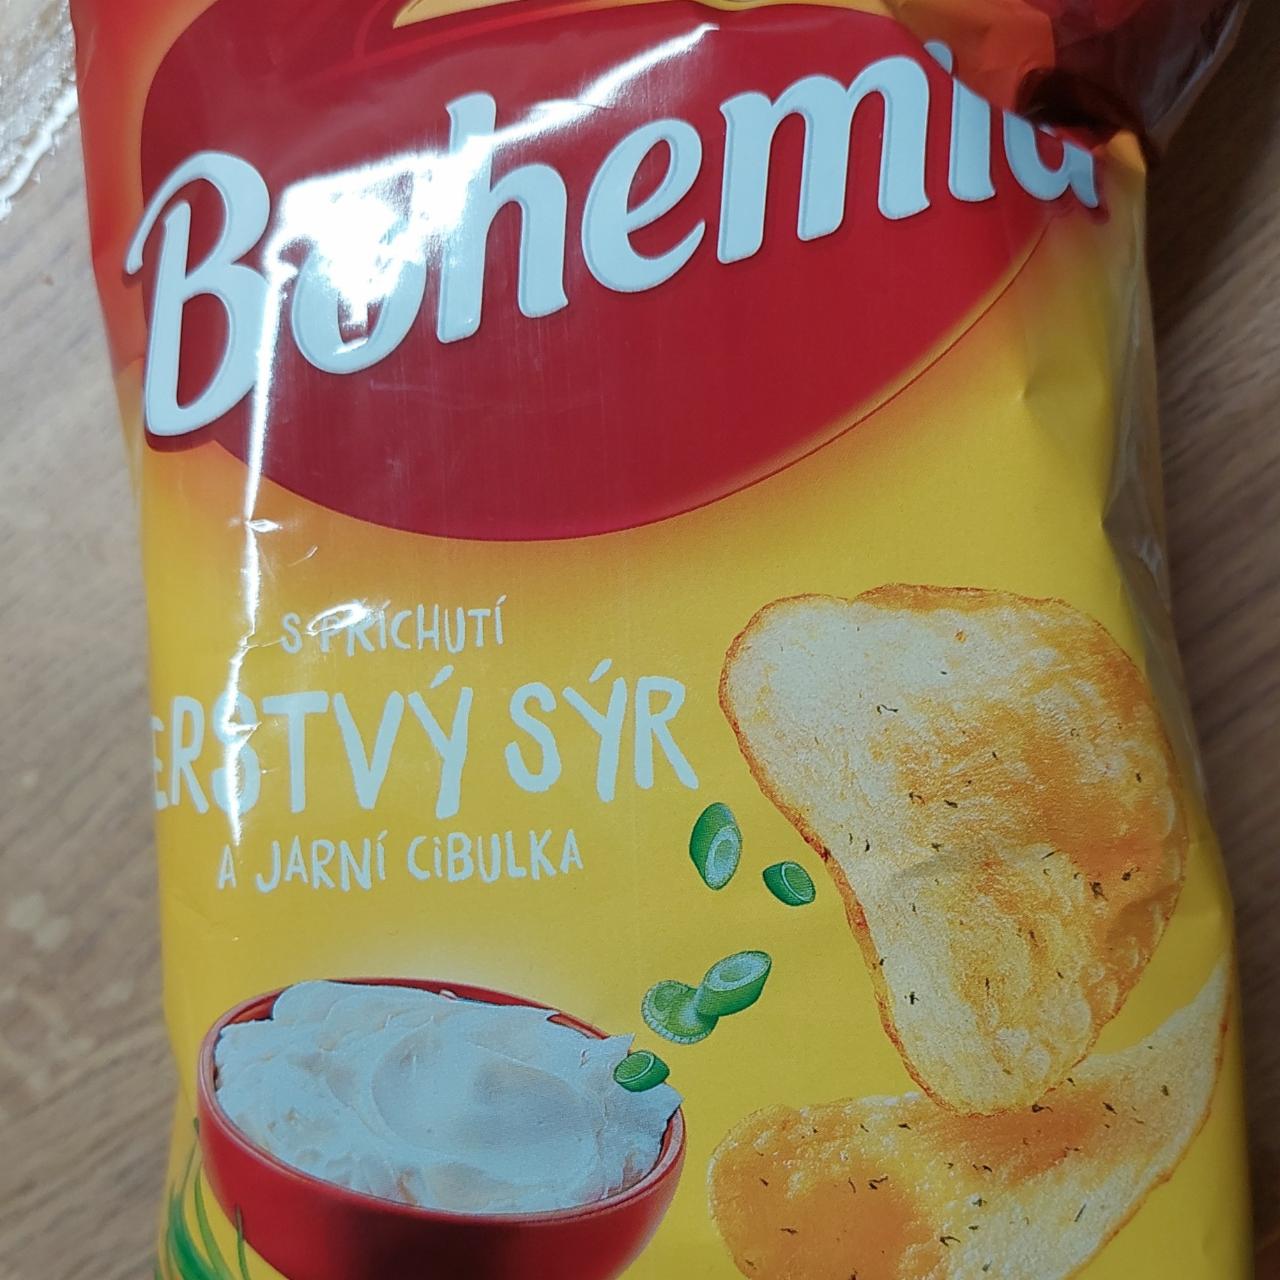 Fotografie - Čerstvý sýr a jarní cibulka Bohemia